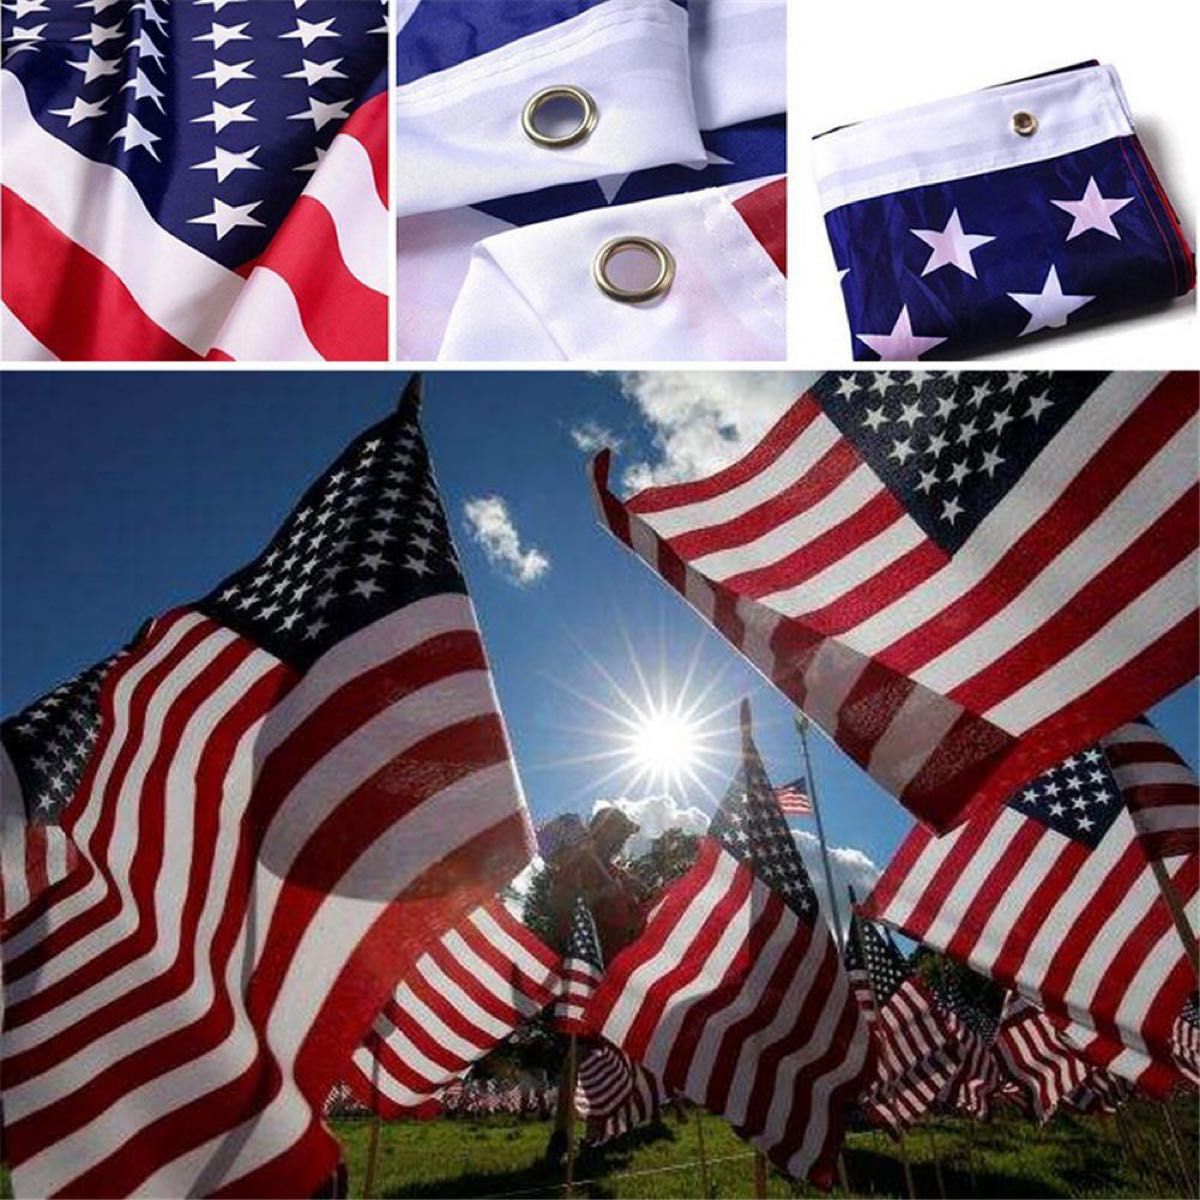 アメリカ 国旗 フラッグ 応援 送料無料 150cm x 90cm 新品